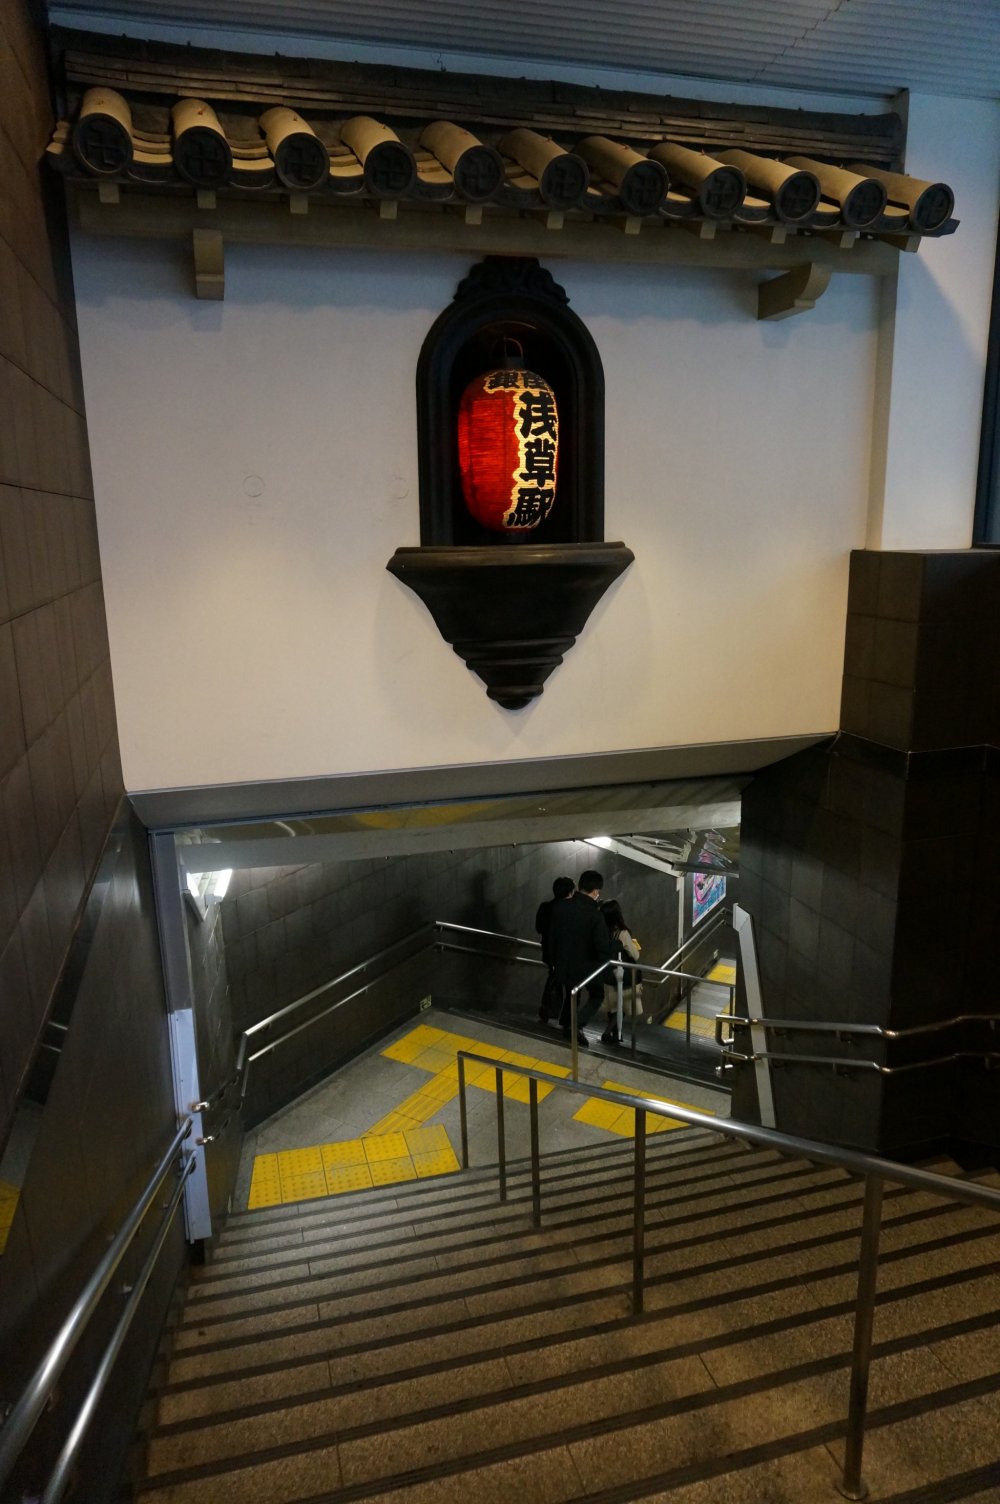 ถ้าเจอประตูทางออกรถไฟใต้ดินนี้แสดงว่ามาถูกทางแล้ว